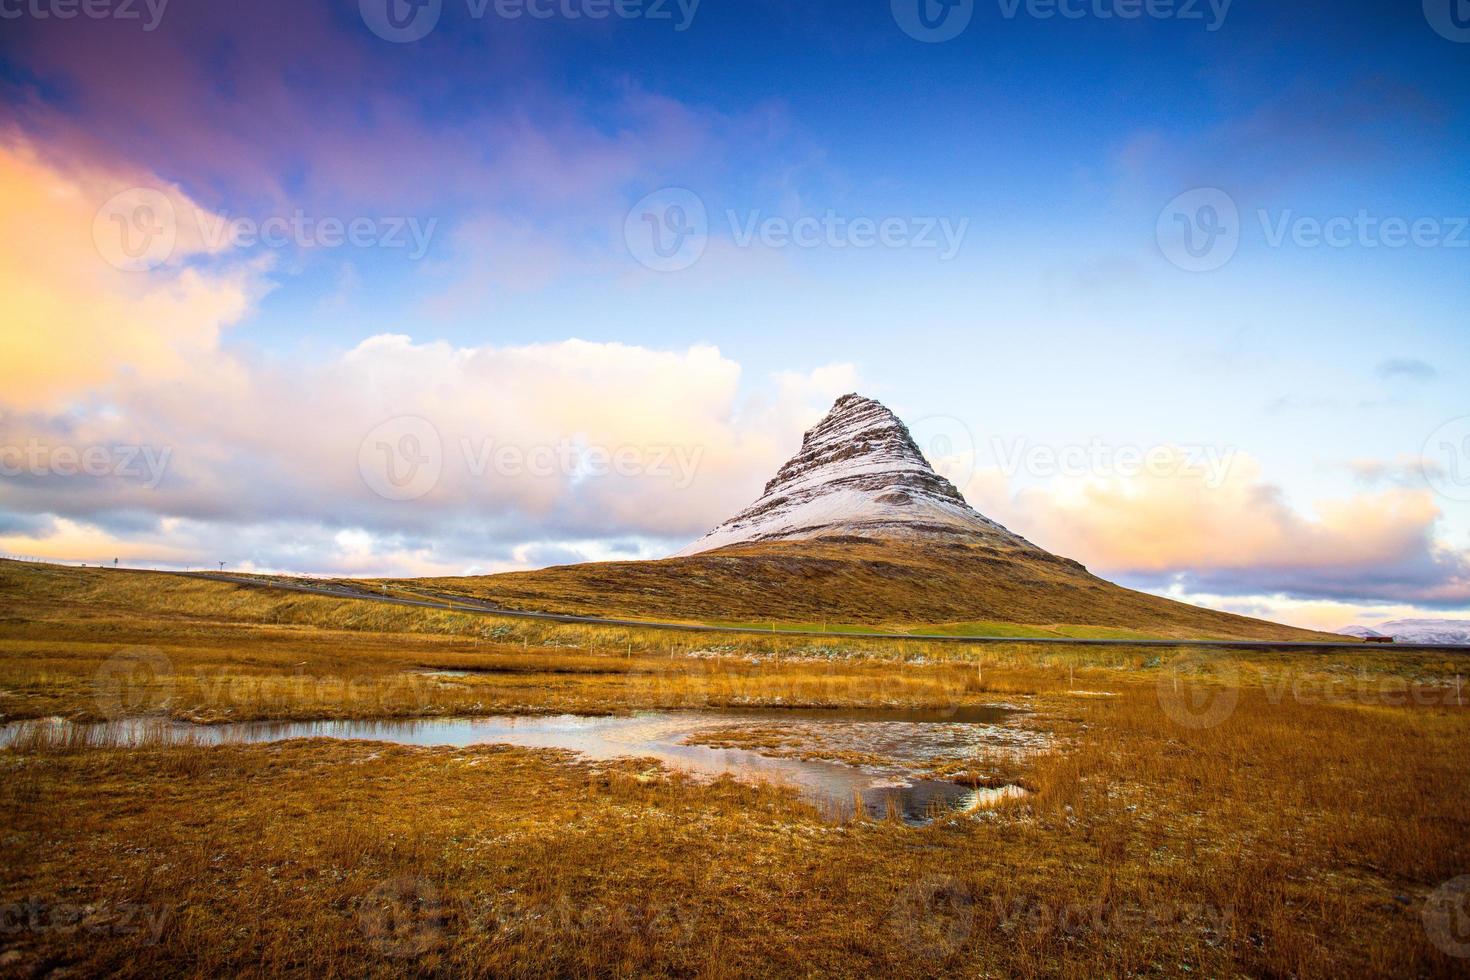 kirkjufell, montaña de la iglesia en islandés, una montaña de 463 m de altura en la costa norte de la península de snaefellsnes en islandia, cerca de la ciudad de grundarfjordur, islandia foto